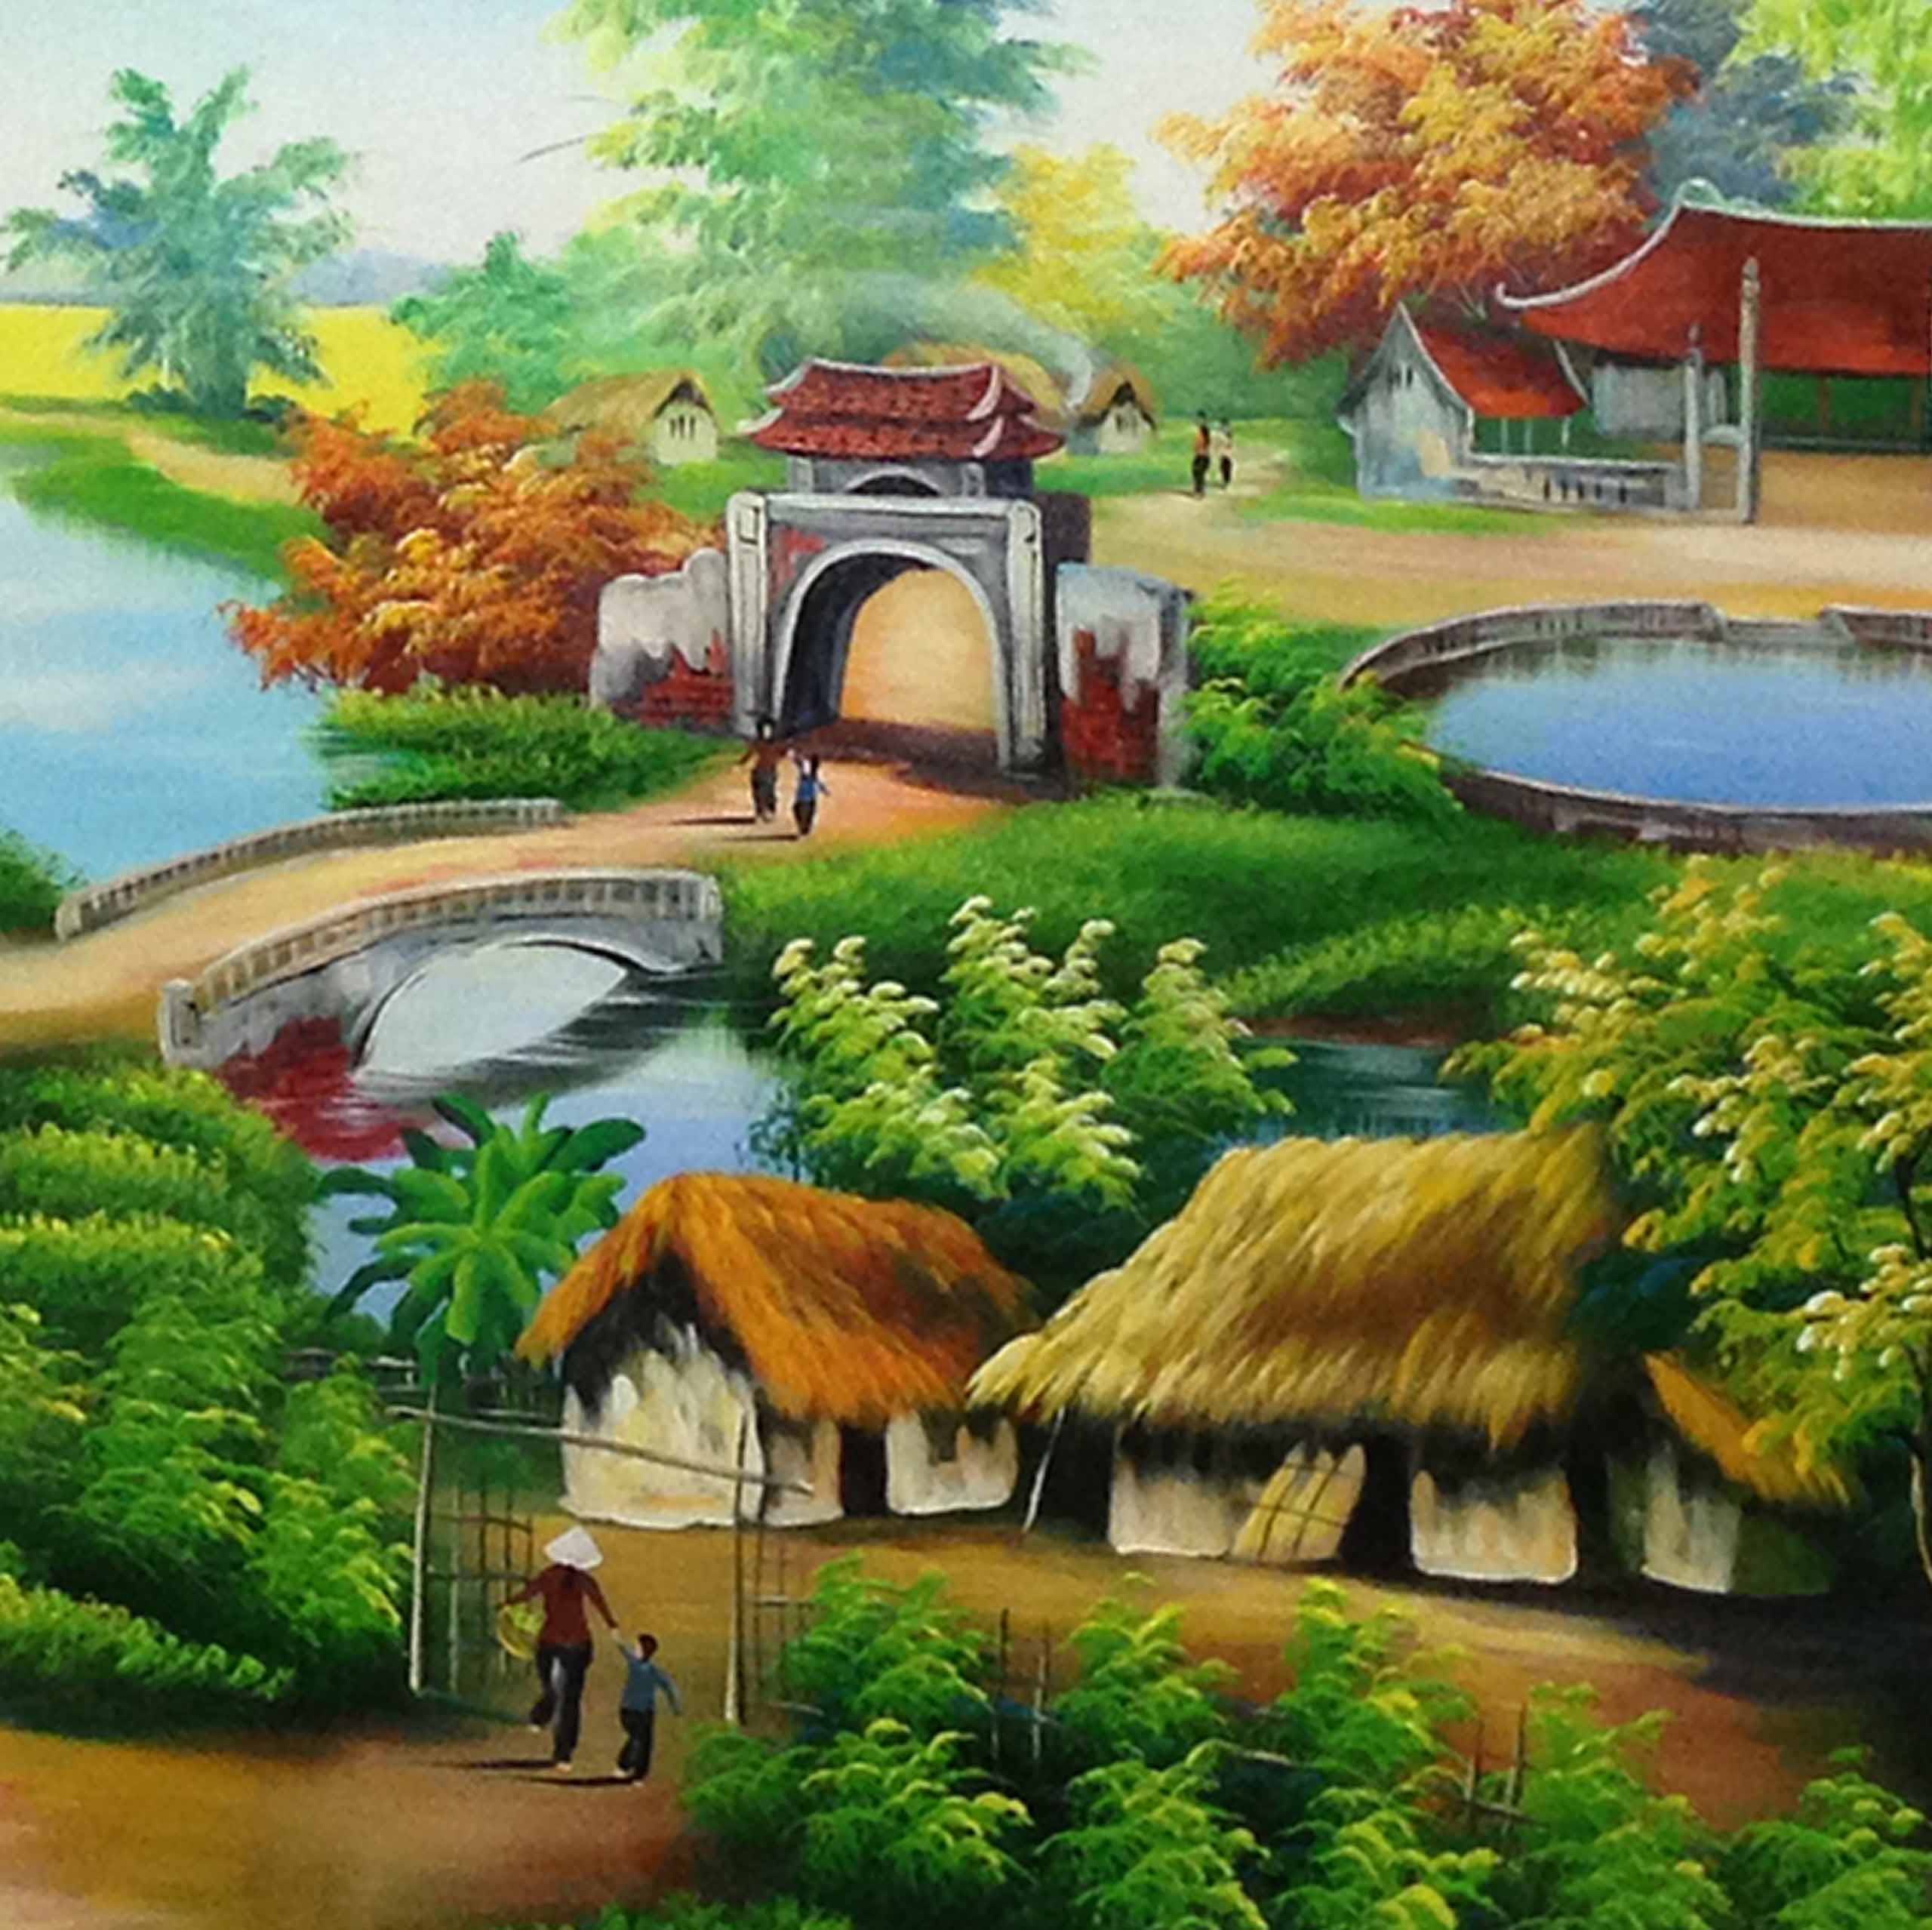 Tranh sơn dầu phong cảnh làng quê Việt Nam - TSD276LHAR - LEHAIS ART -  TRANH NGHỆ THUẬT CAO CẤP